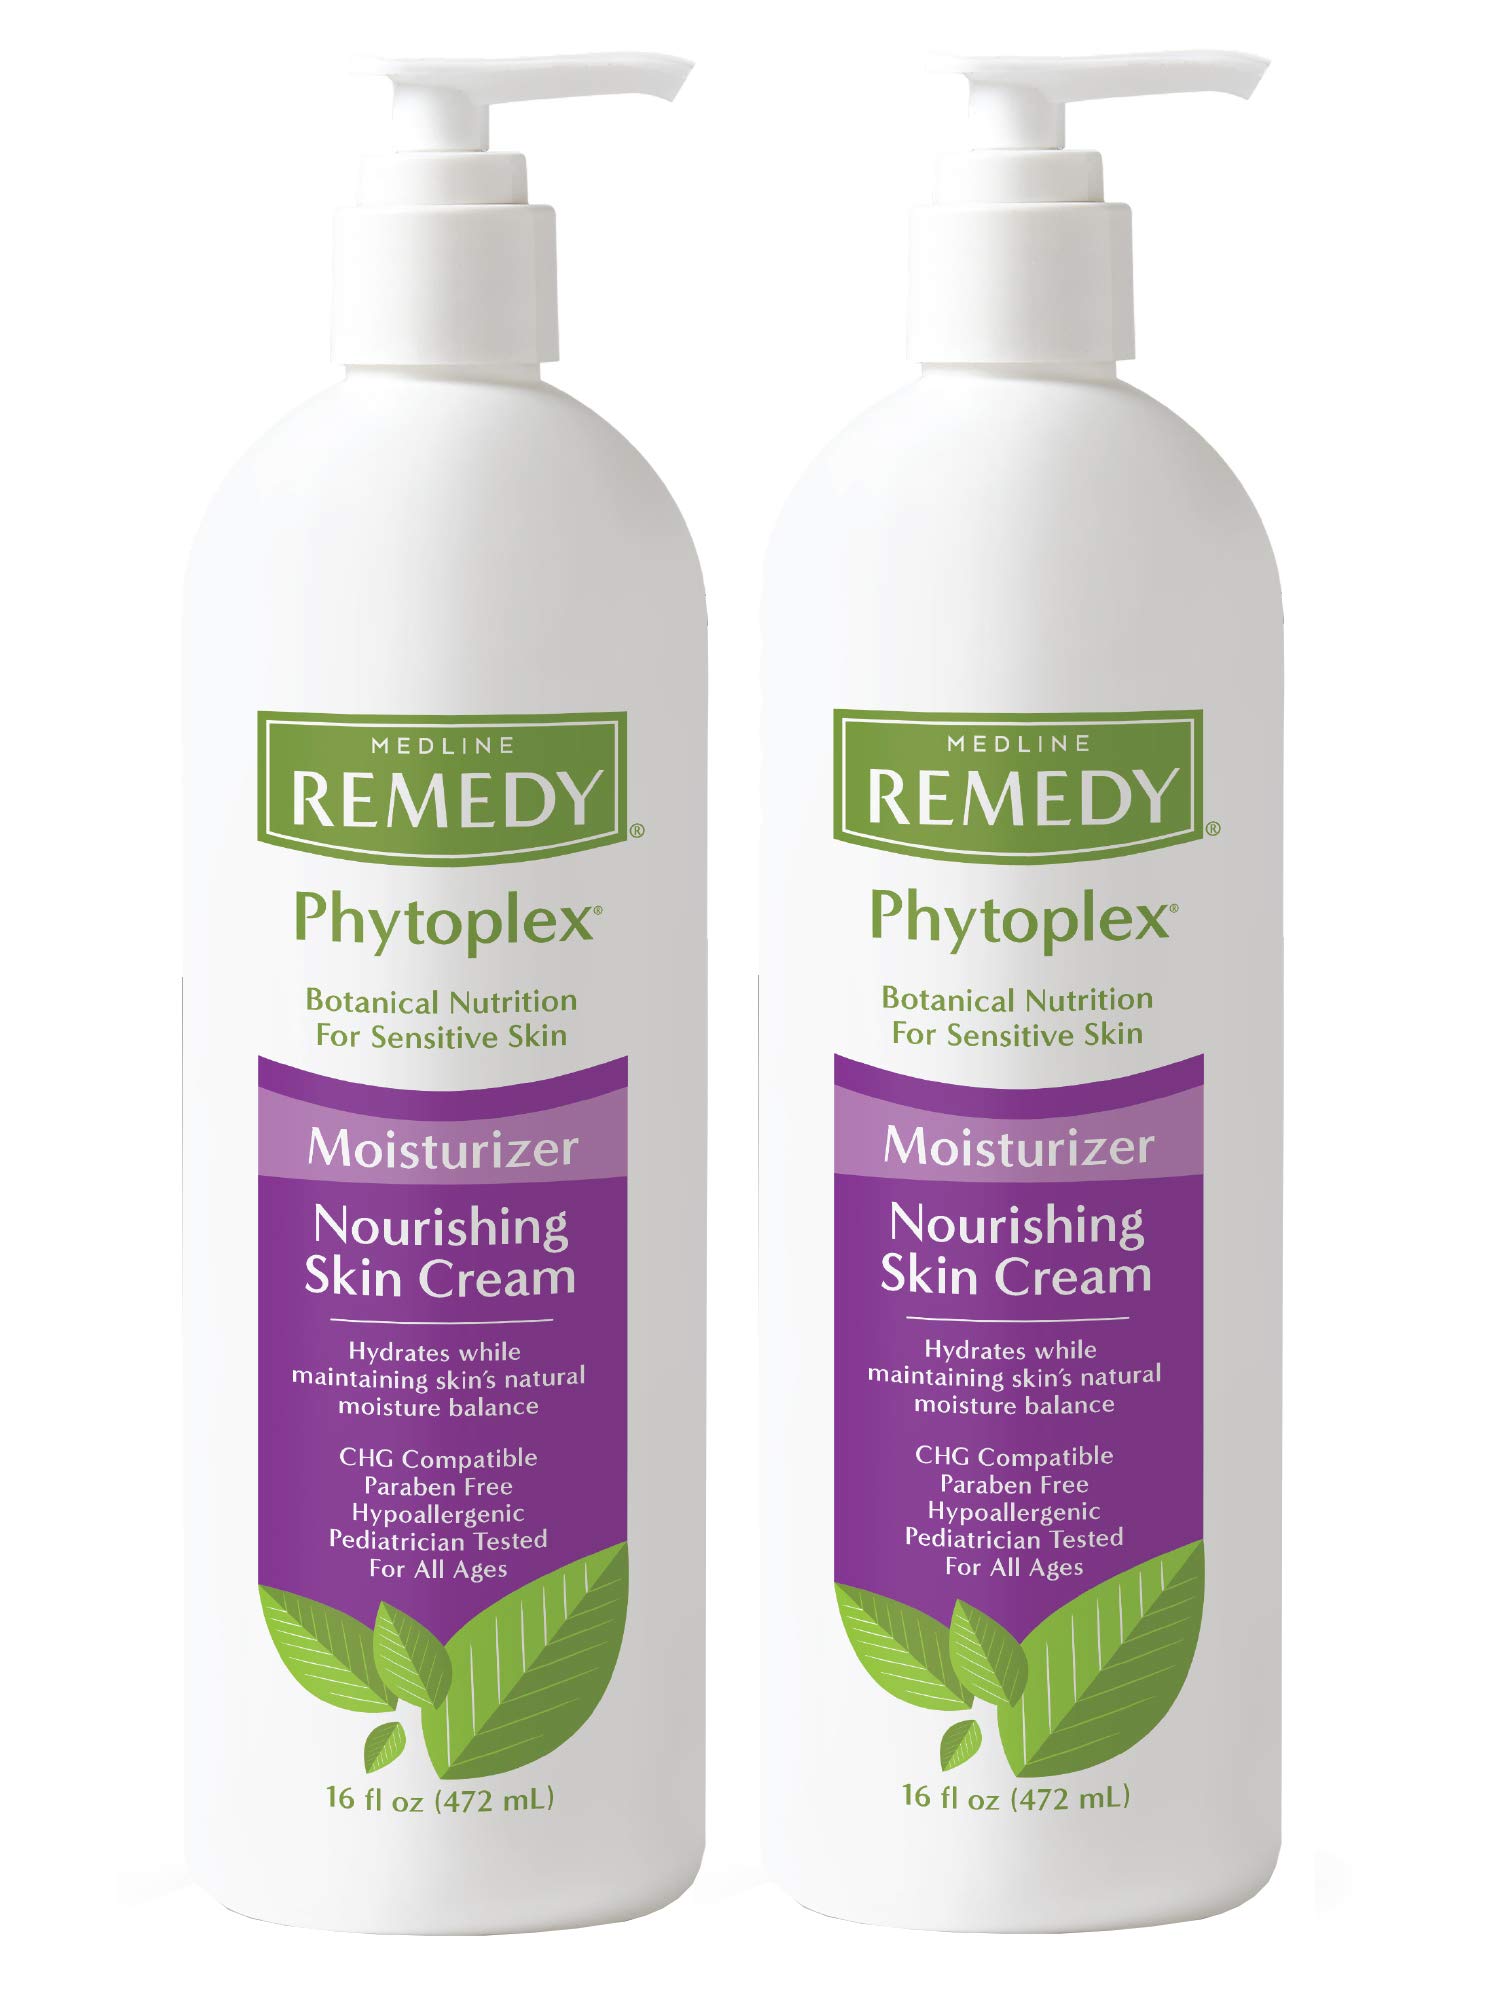 Medline Remedy Phytoplex Nourishing Skin Cream, Skin Moisturizer, Paraben Free Body Lotion, 16 Fl Oz, 2 Pack